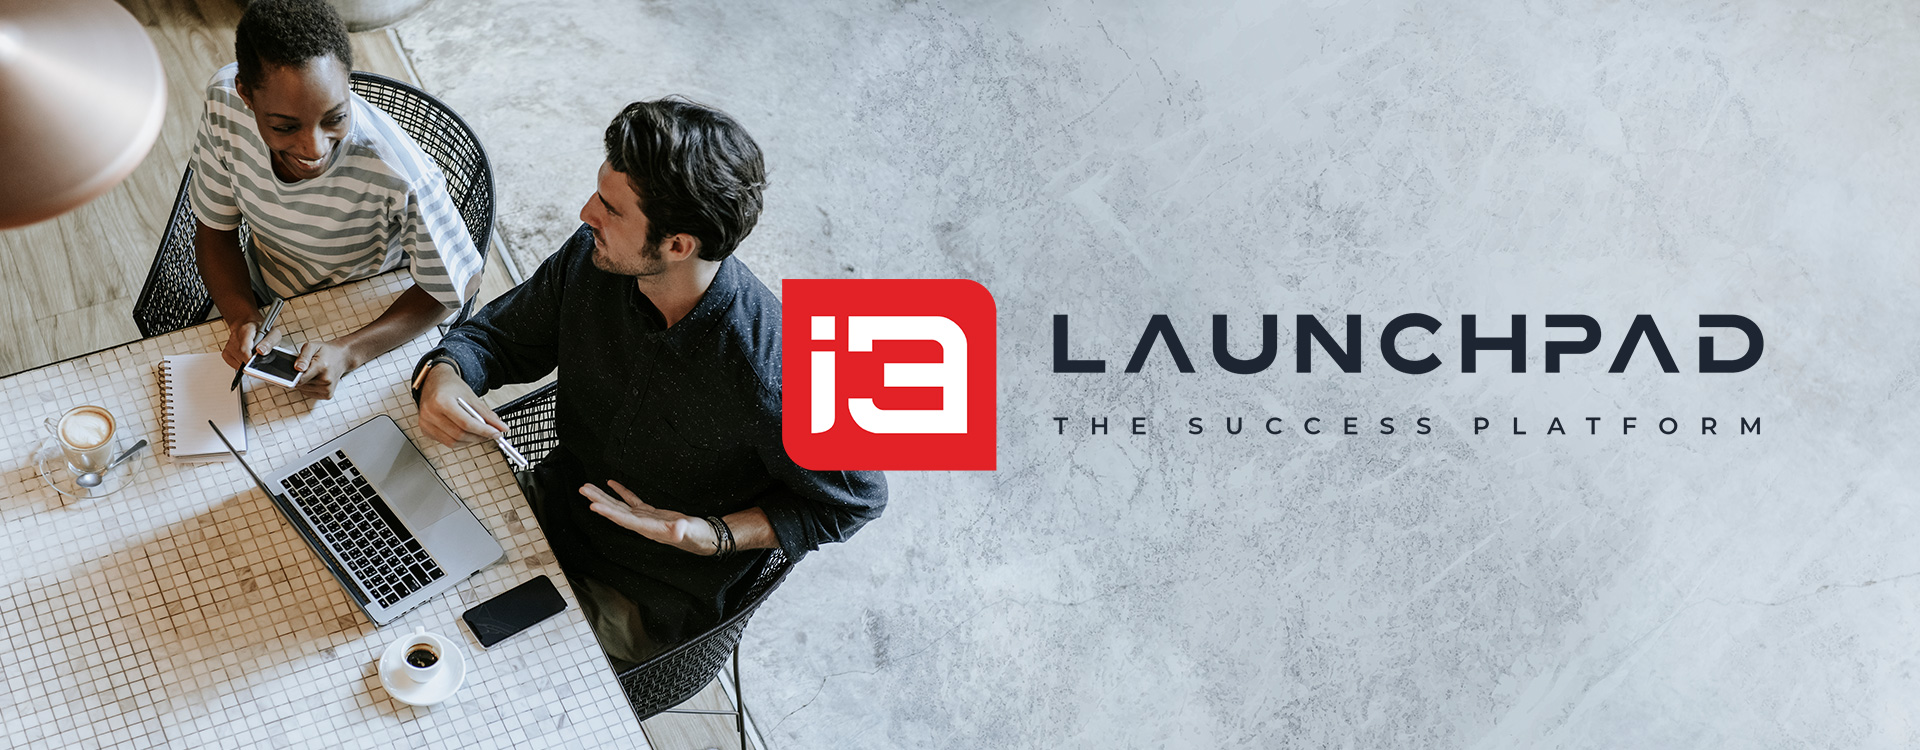 i3 Launchpad